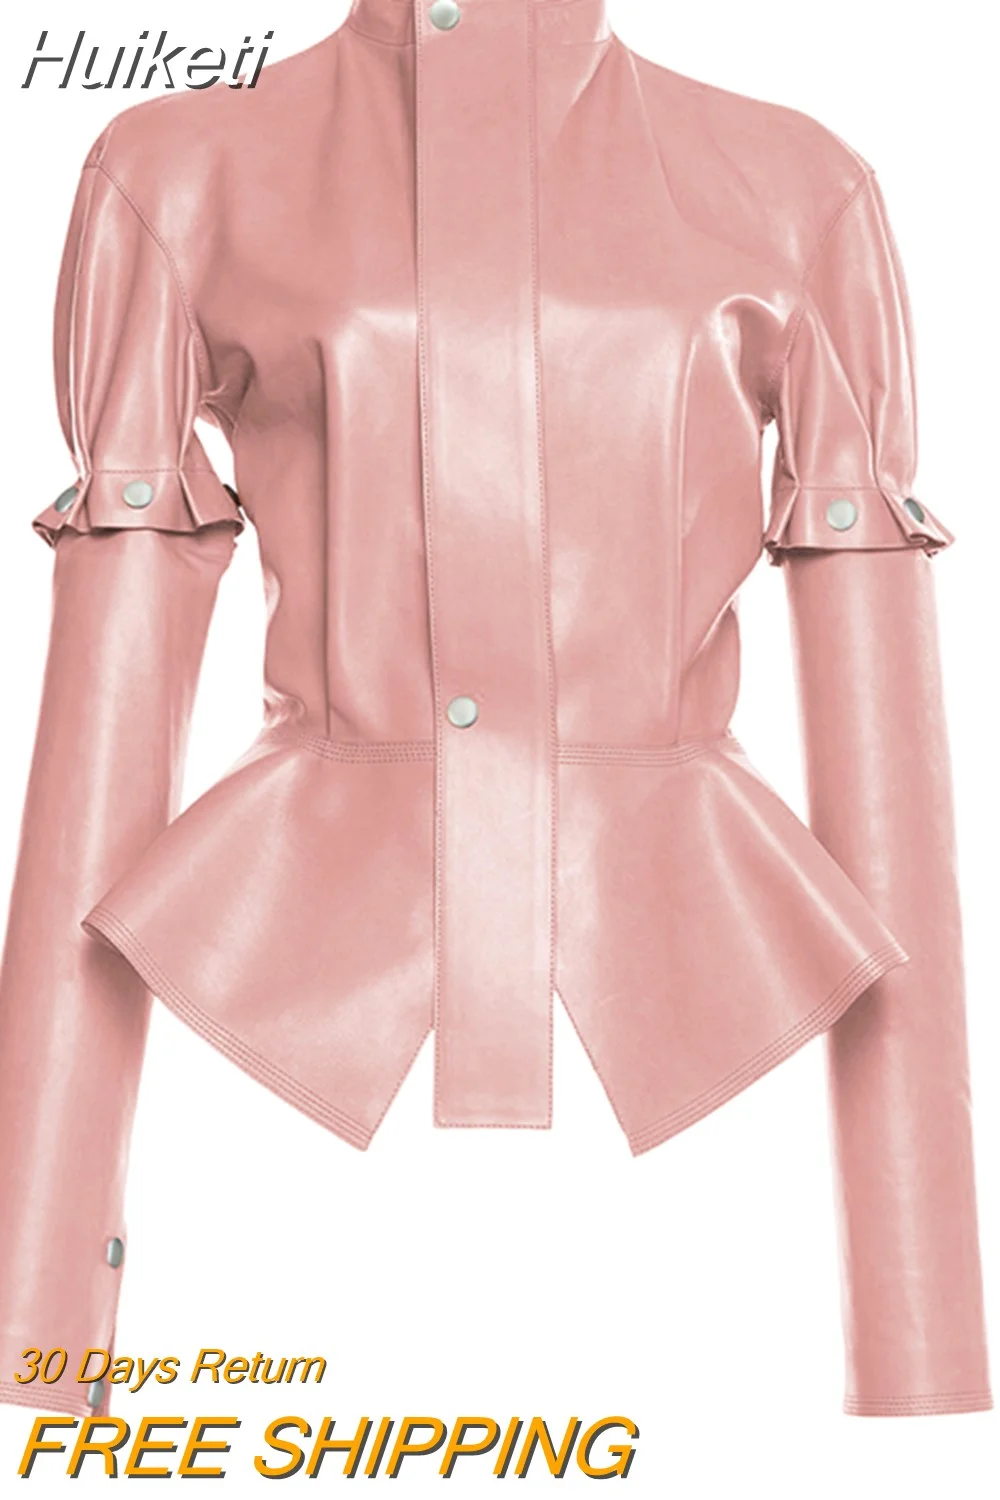 Huiketi Spring Autumn Short Stylish Chic Pink Shiny Reflective Patent Pu Leather Jacket Women with Detachable Long Sleeves 2023